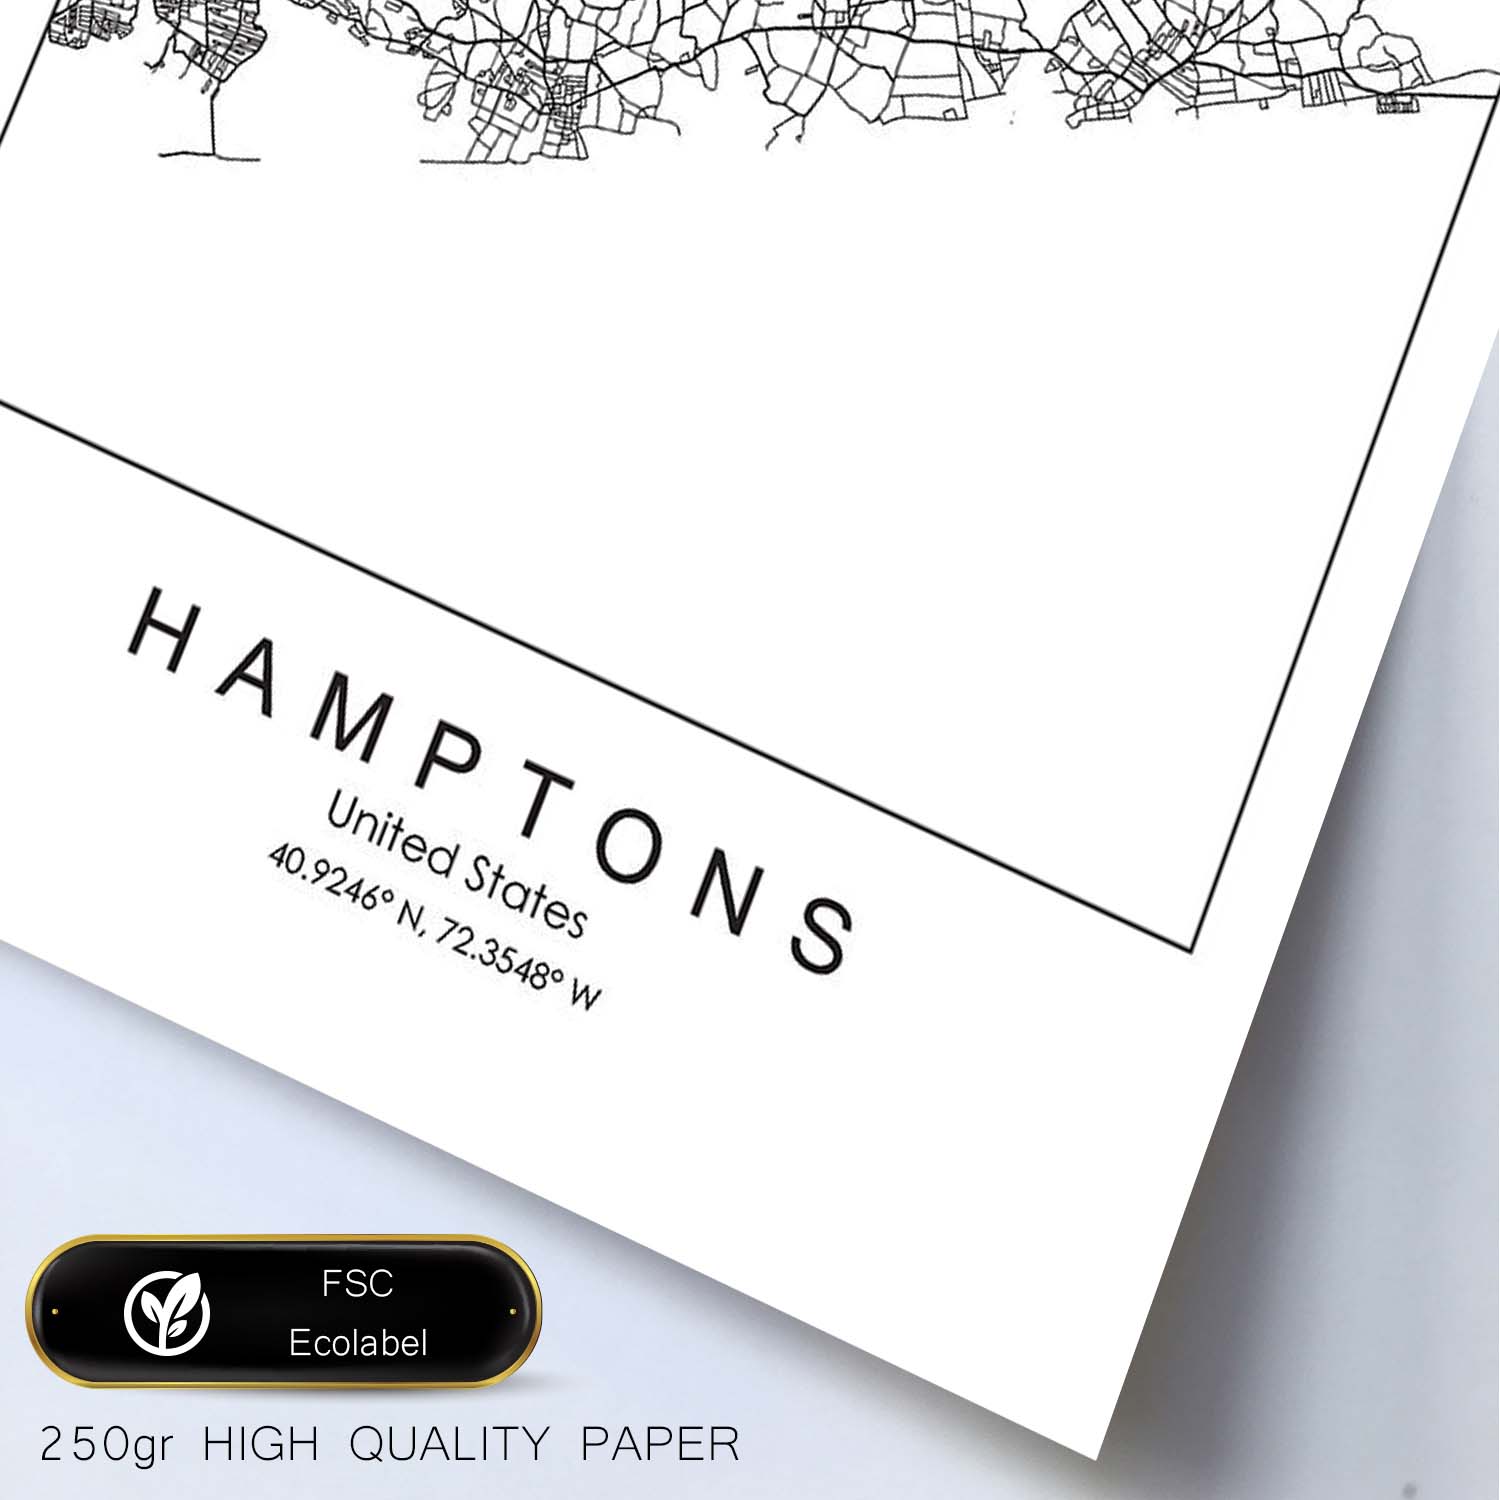 Poster con mapa de Hamptons. Lámina de Estados Unidos, con imágenes de mapas y carreteras-Artwork-Nacnic-Nacnic Estudio SL